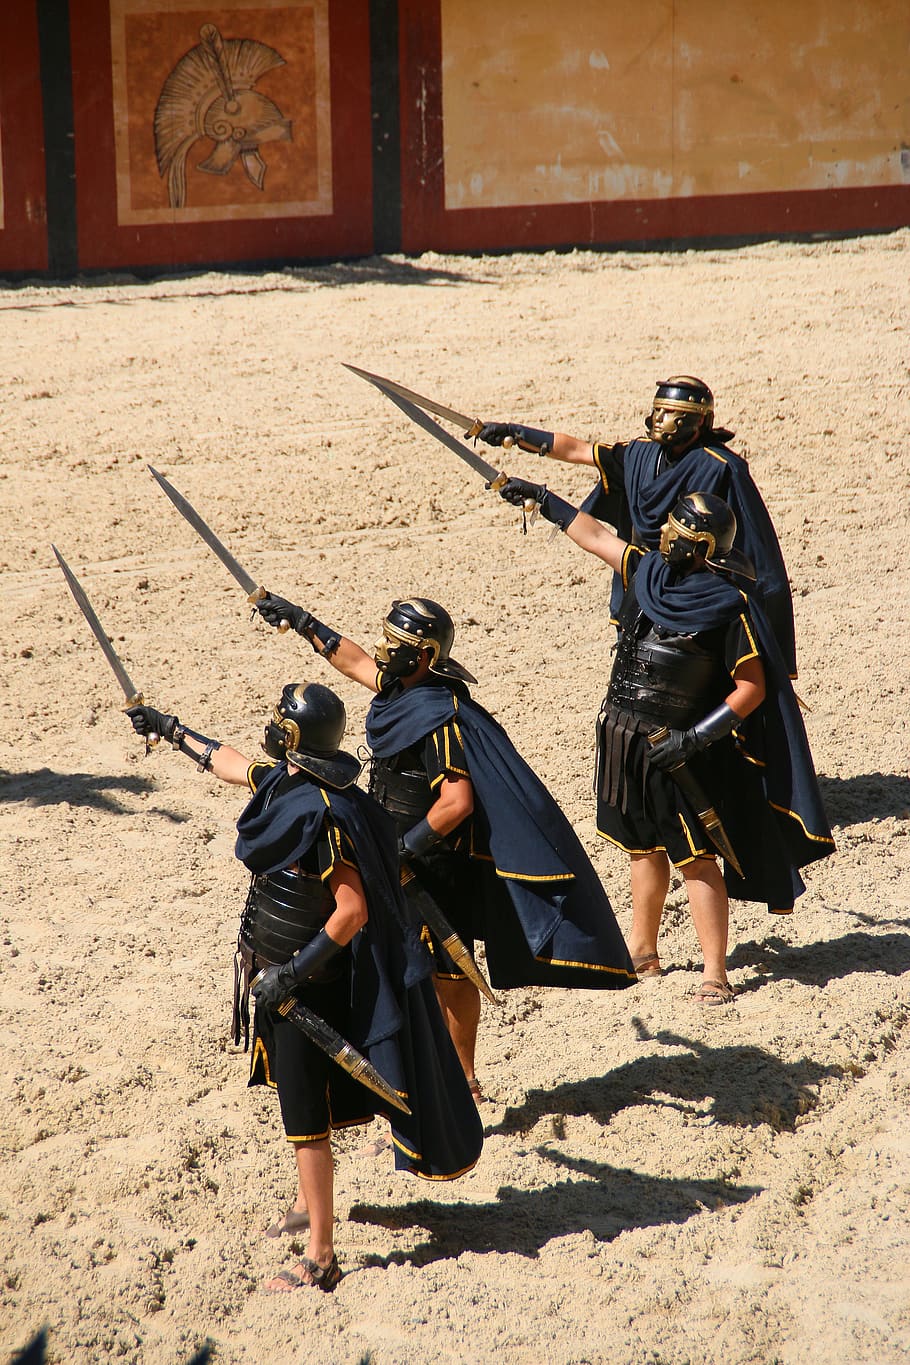 roman, tentara, kostum, pedang, gladiator, helm, roma, baju besi, pertempuran, sederhana